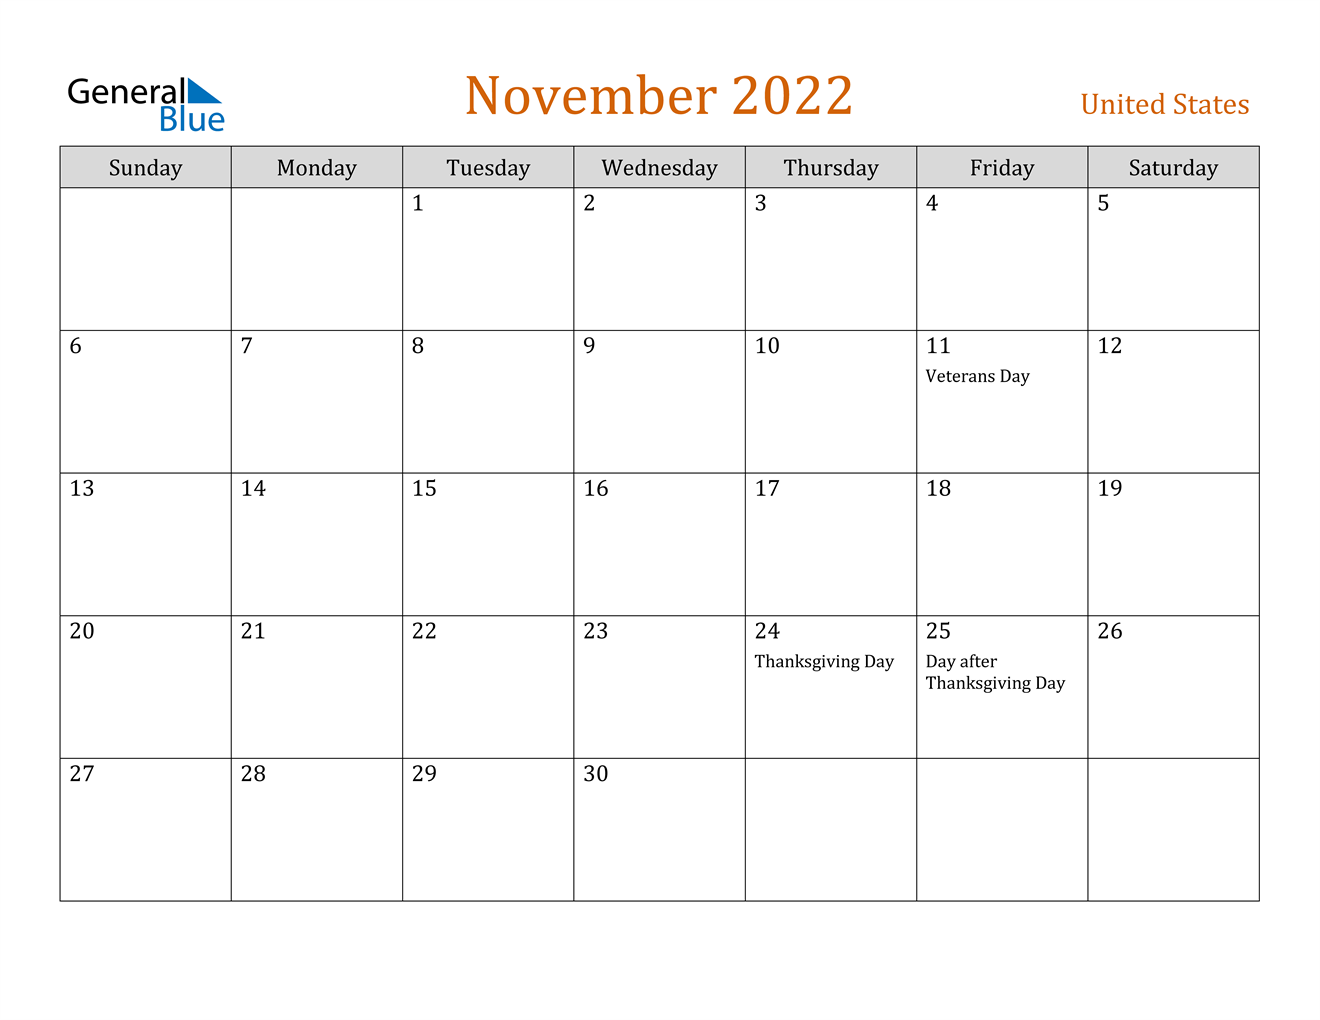 kalender-november-2022-als-excel-vorlagen-mobile-legends